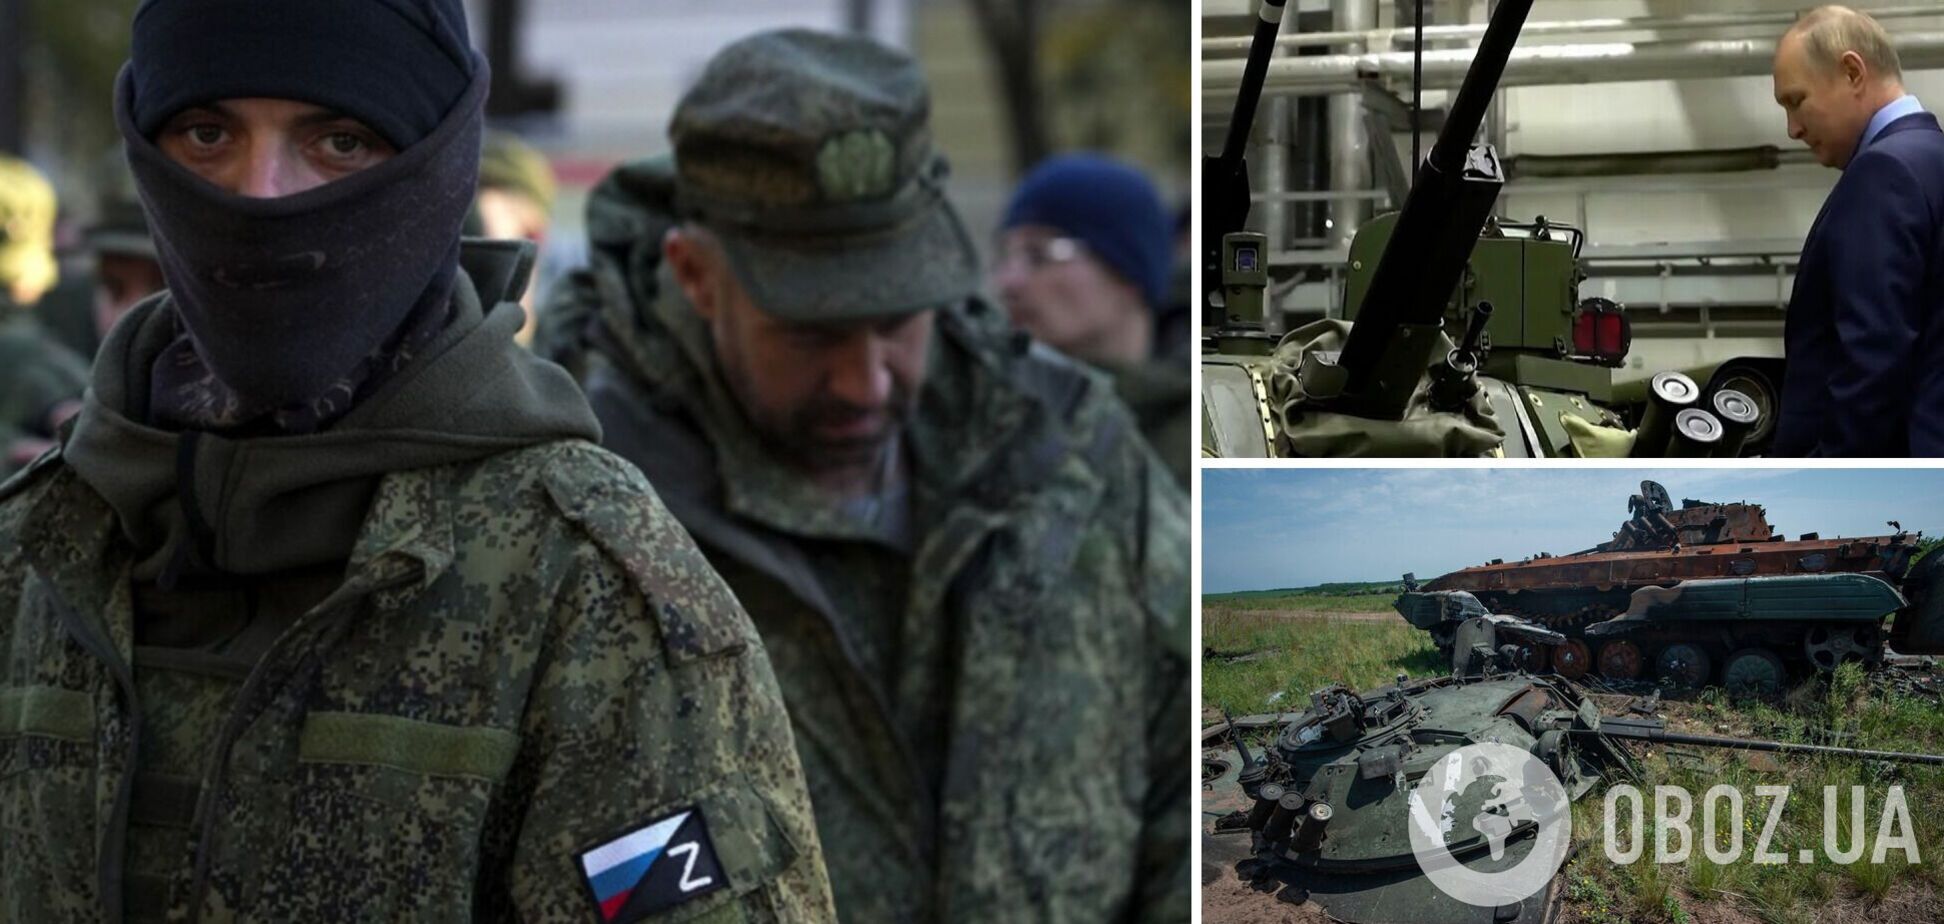 'Внутри армии начинаются едва ли не бунты': эксперт указал на проблемы войск Путина и оценил возможности российского ВПК